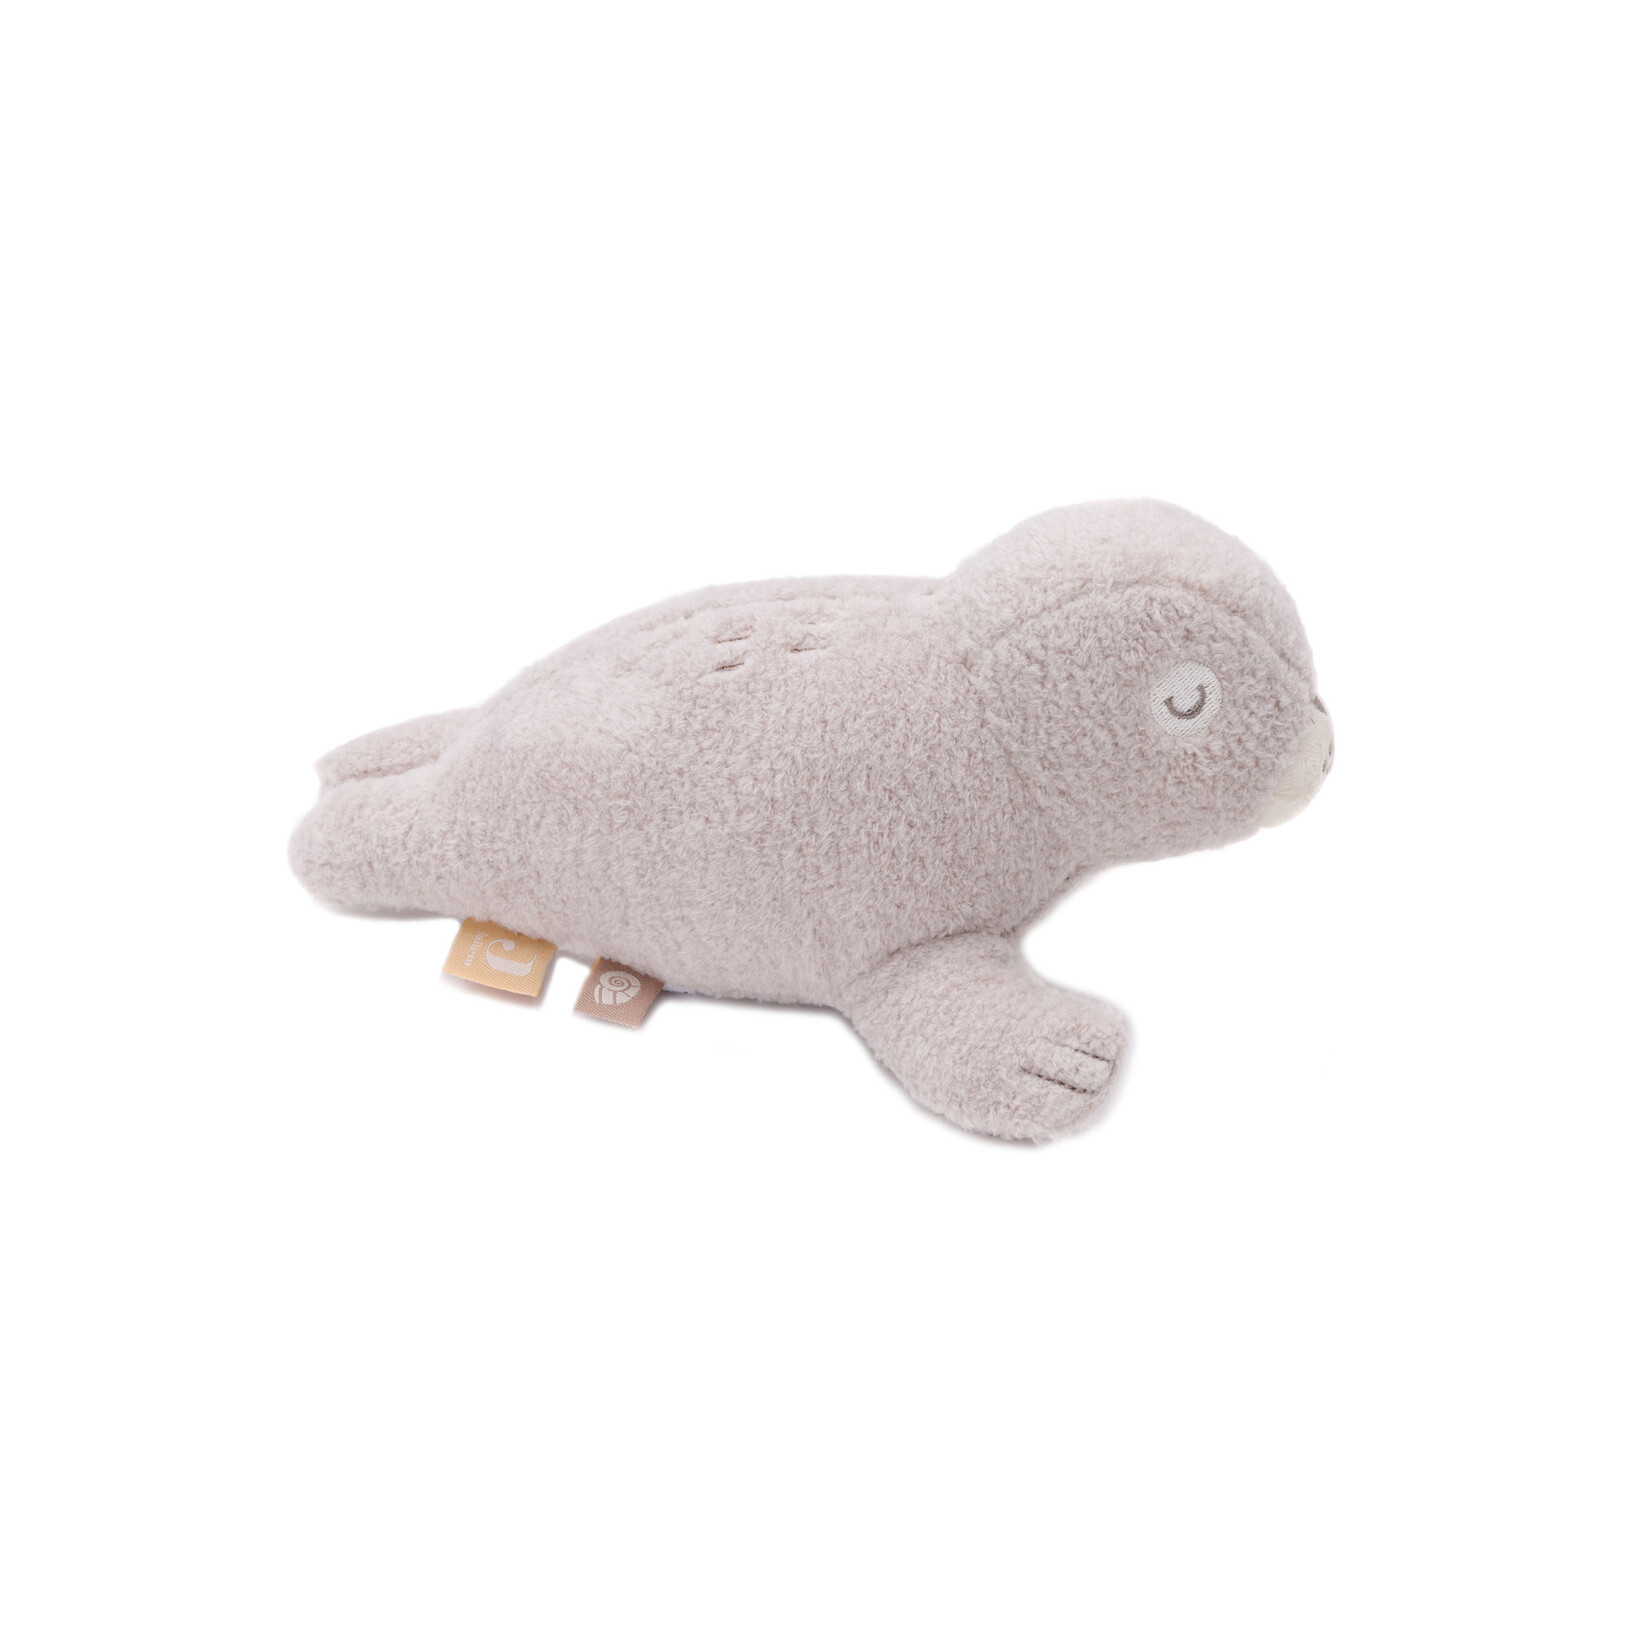 Jollein Jollein - Activity Toy Deepsea Seal